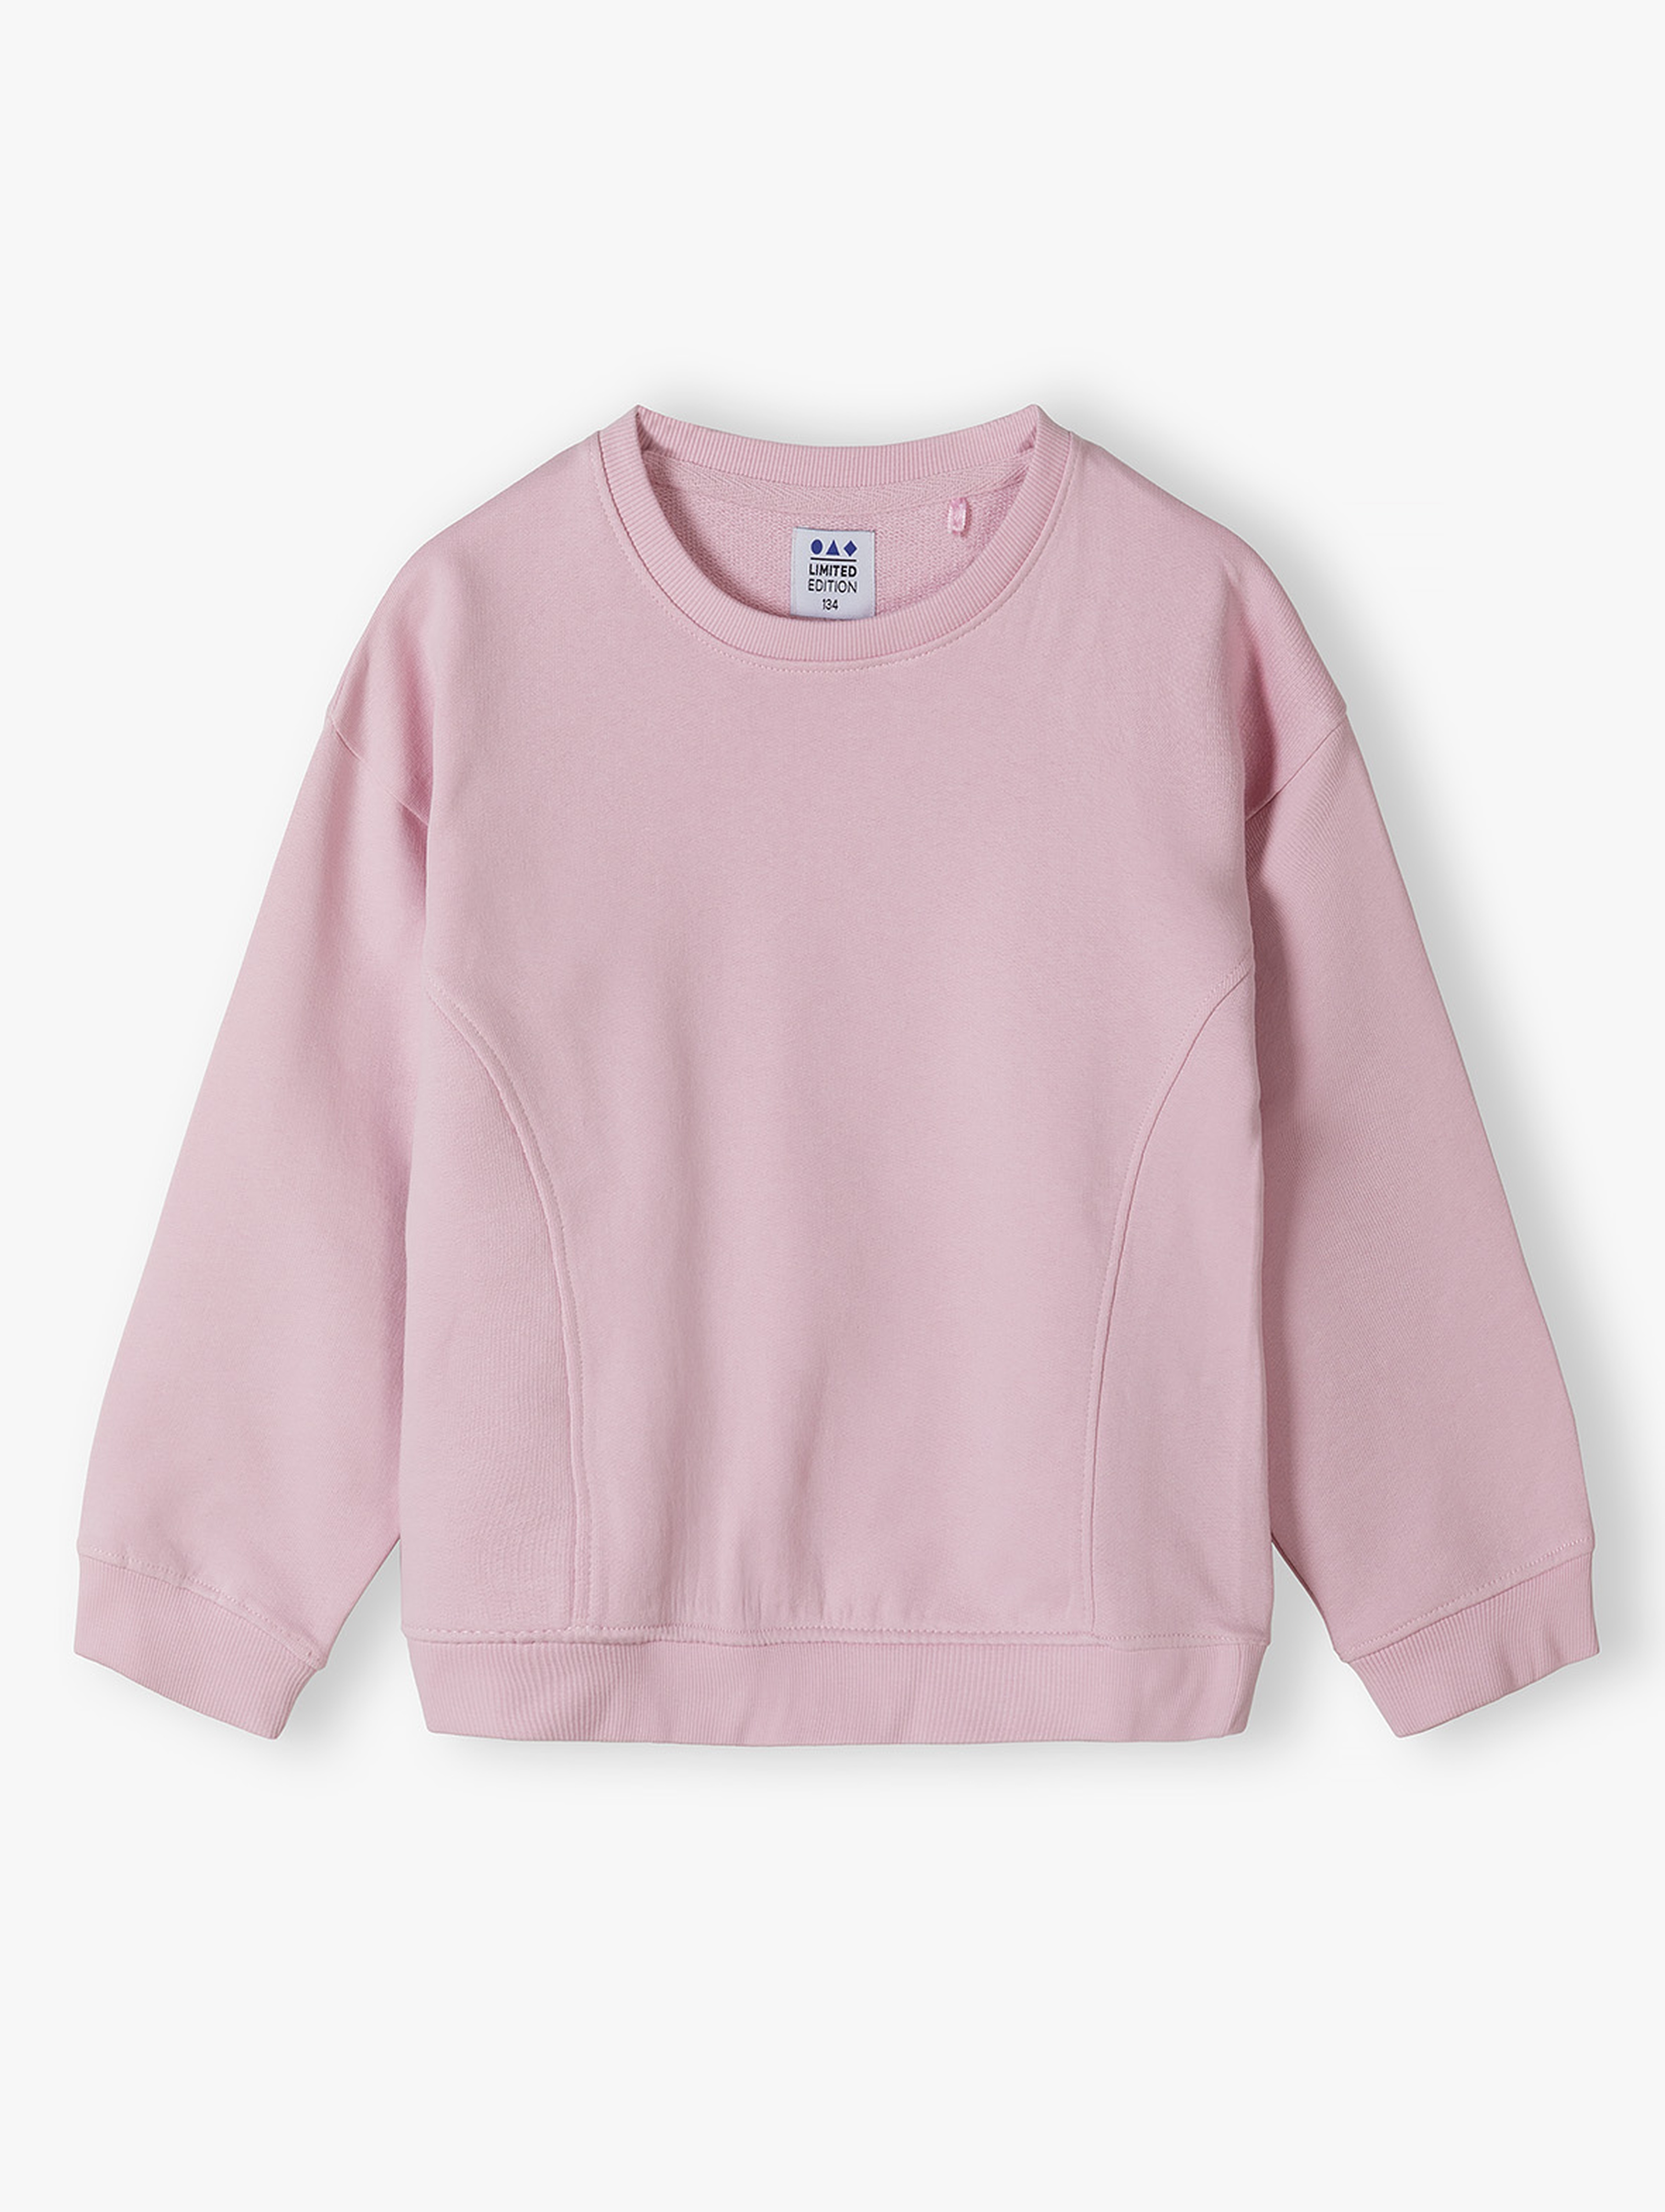 Nierozpinana bluza dresowa oversize - różowa - Limited Edition